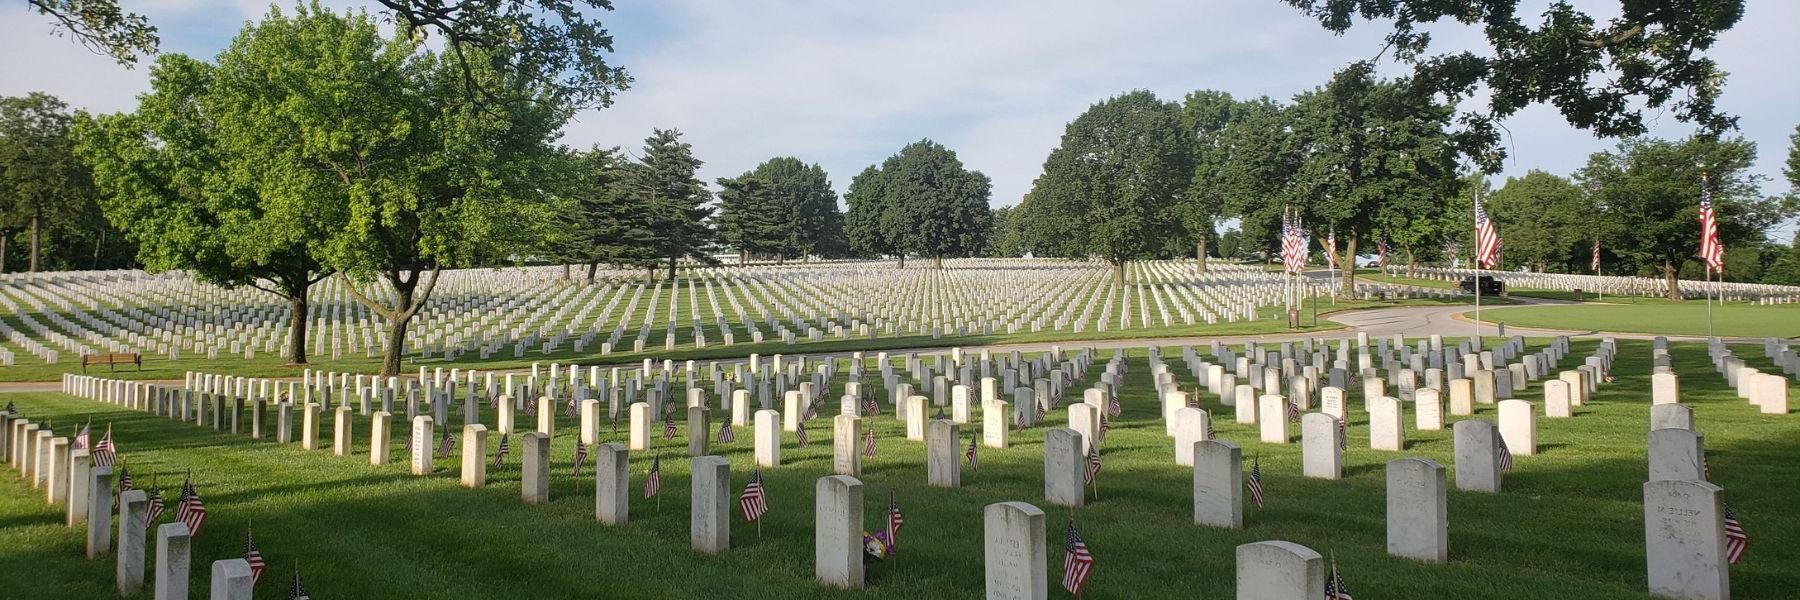 杰斐逊兵营国家公墓保存着2022世界杯投注斯在《2022世界杯赛事竞猜》中扮演的迷人角色.S. 军事历史.